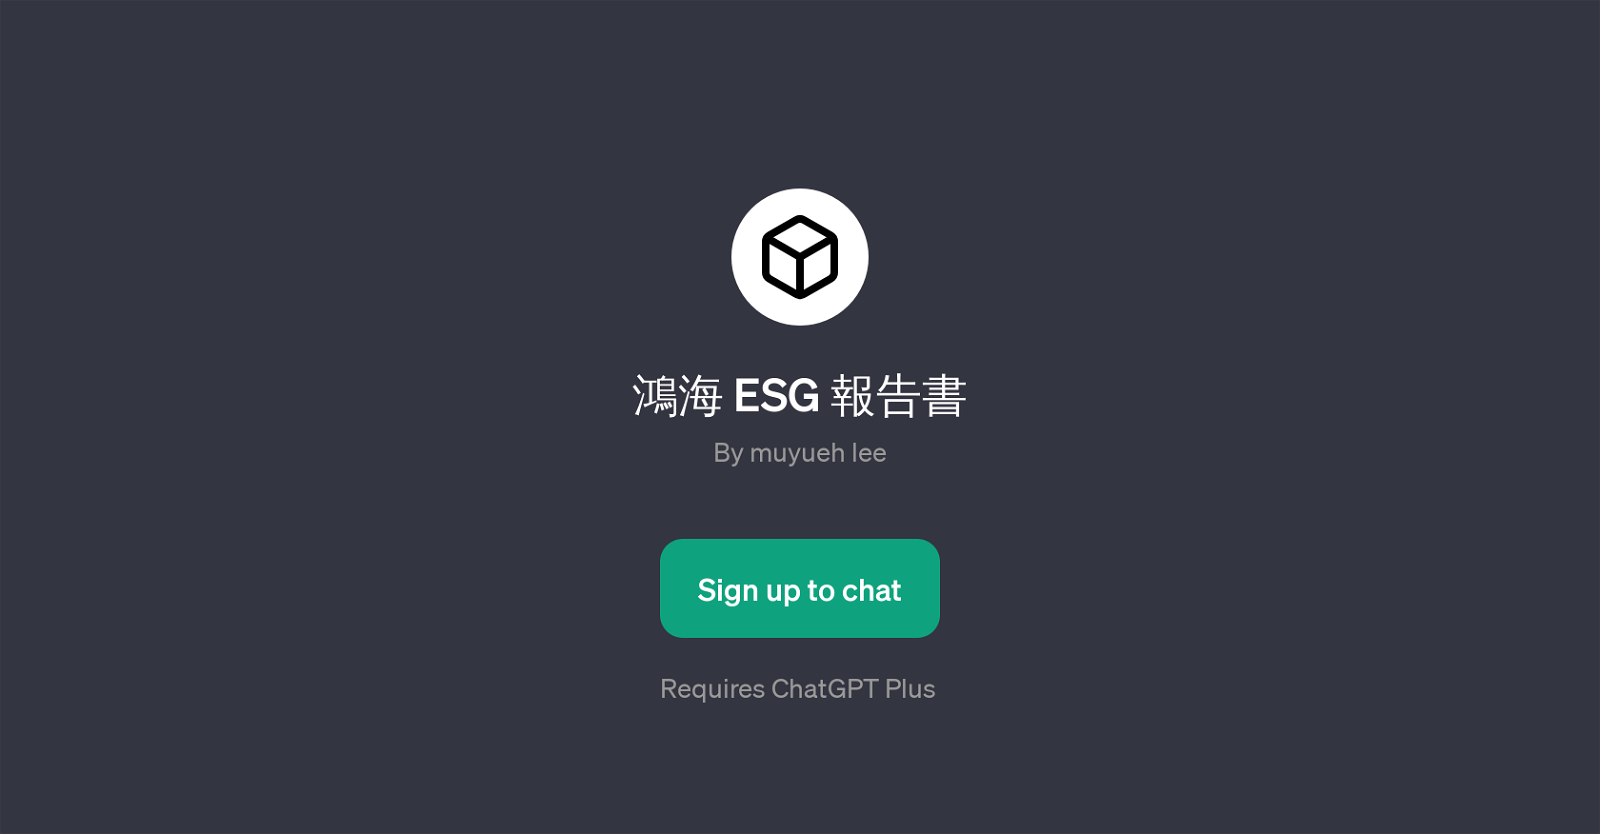 ESG website